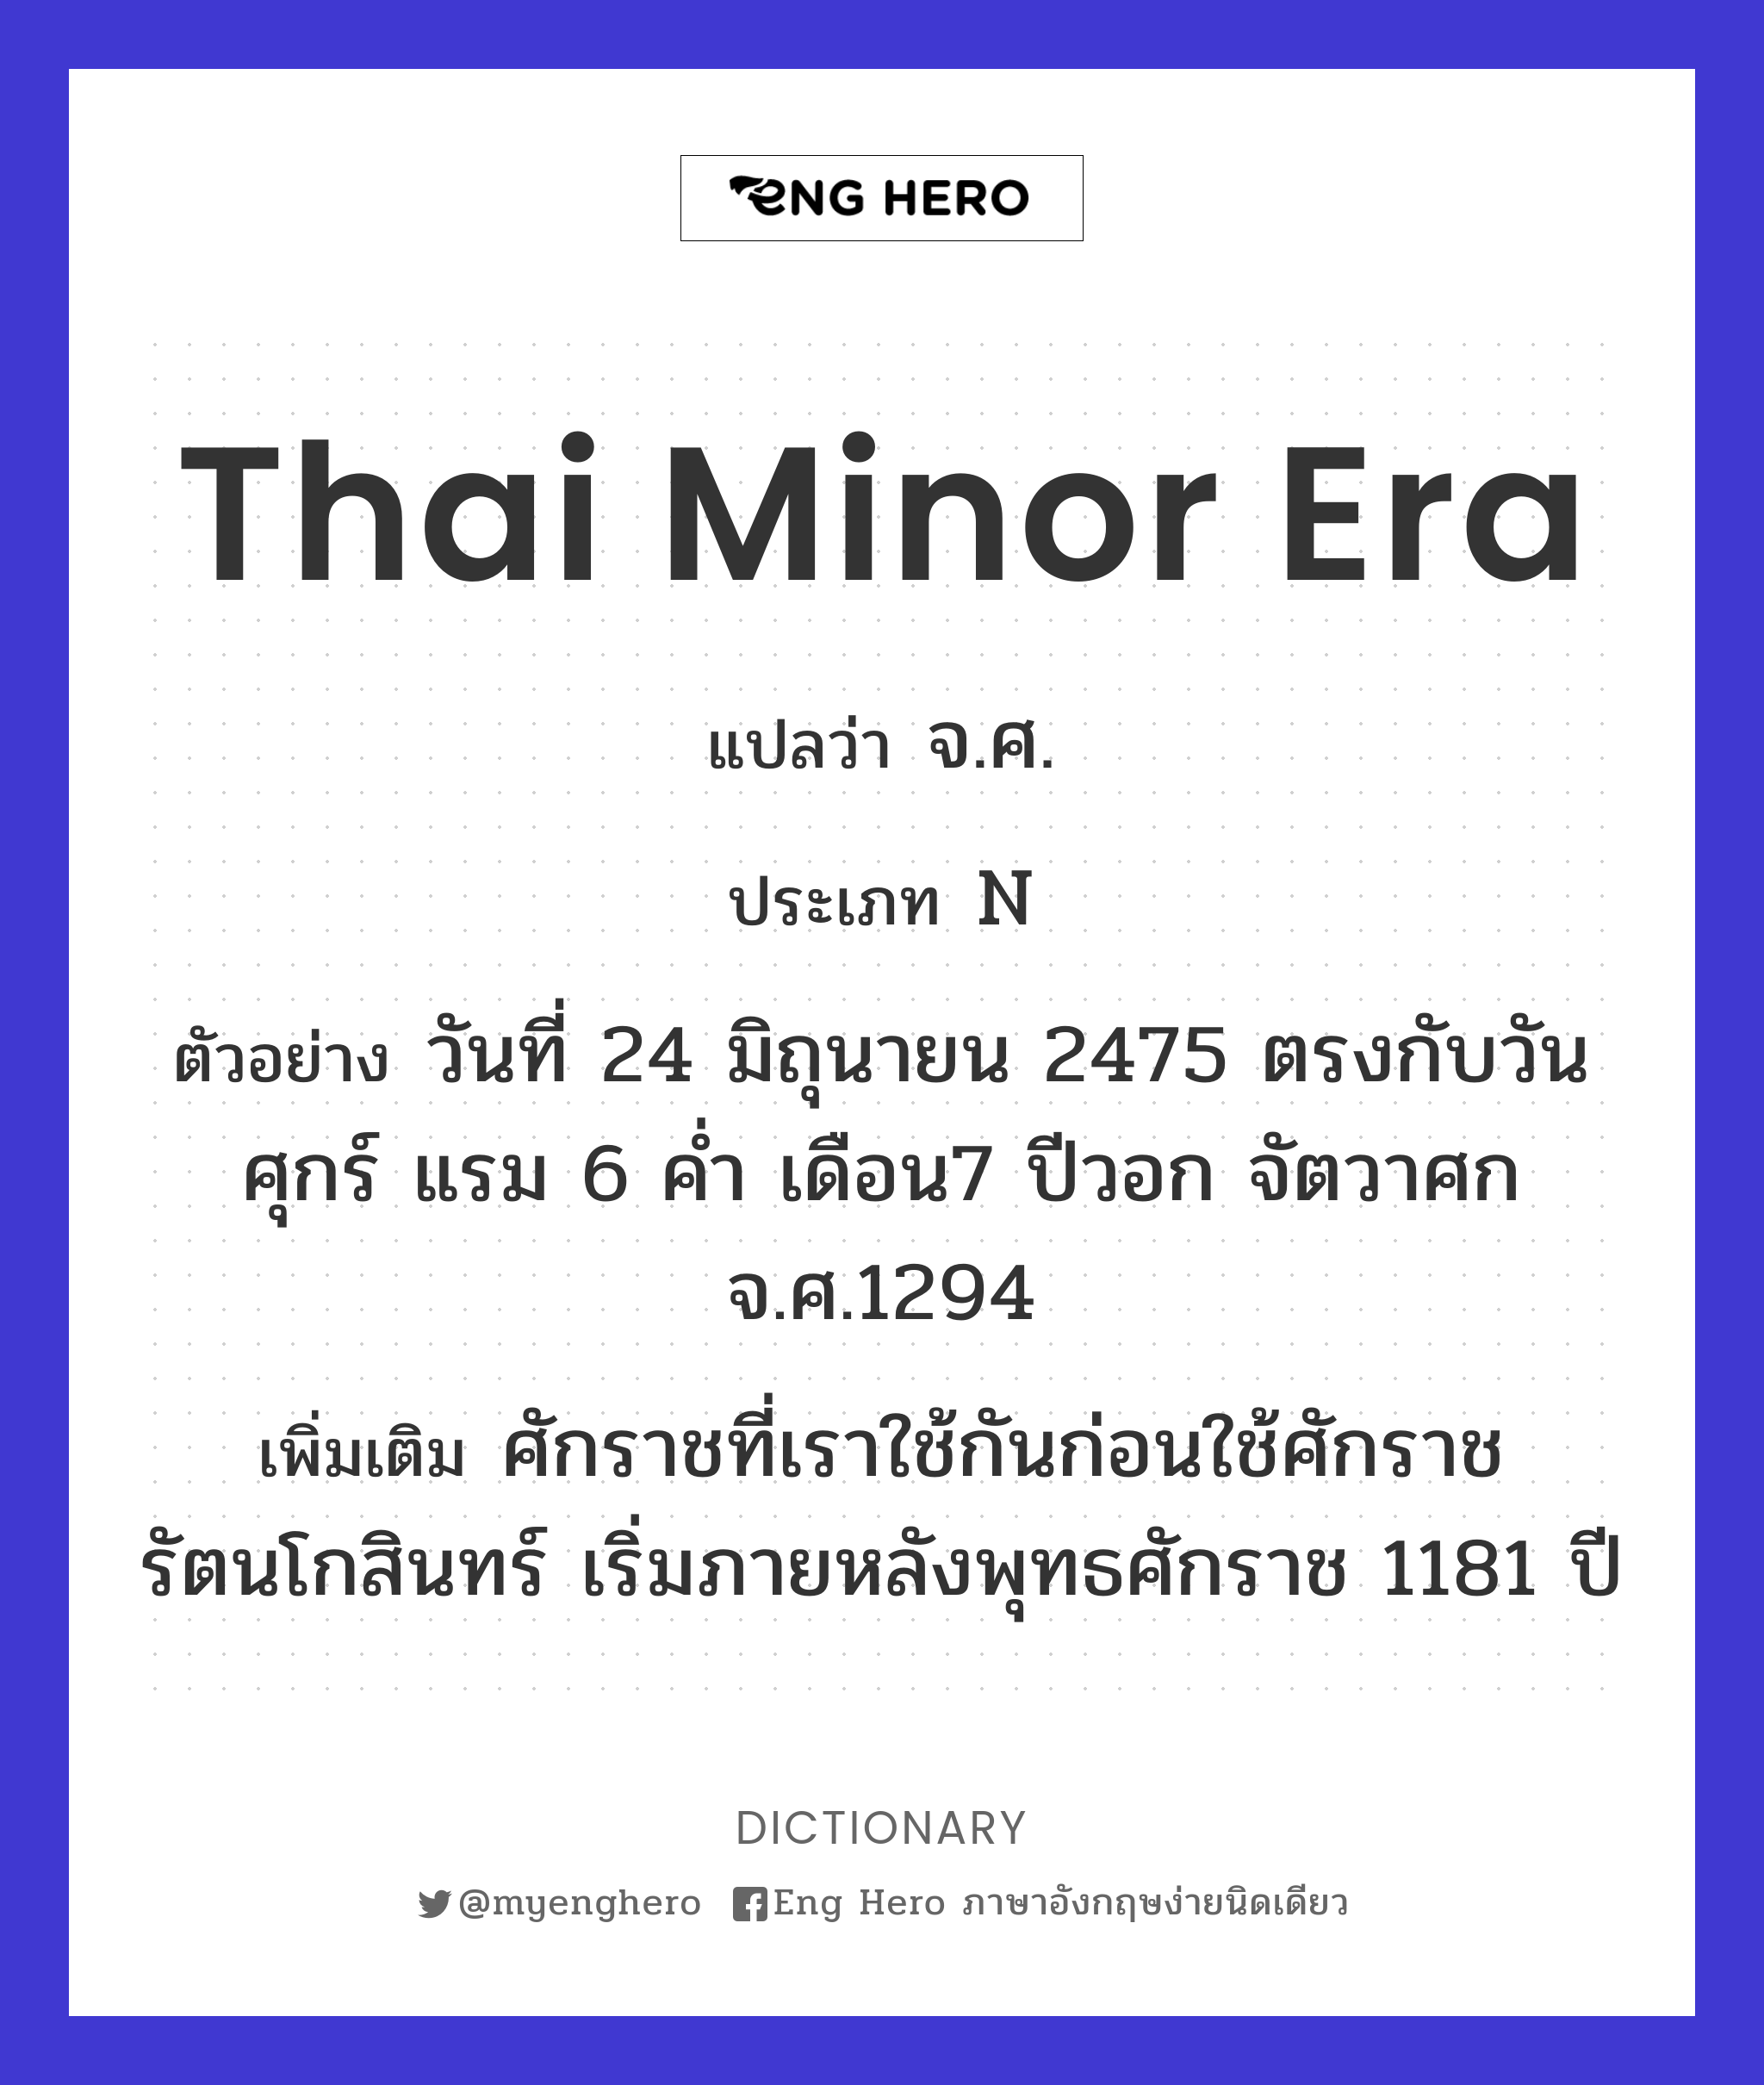 Thai minor era